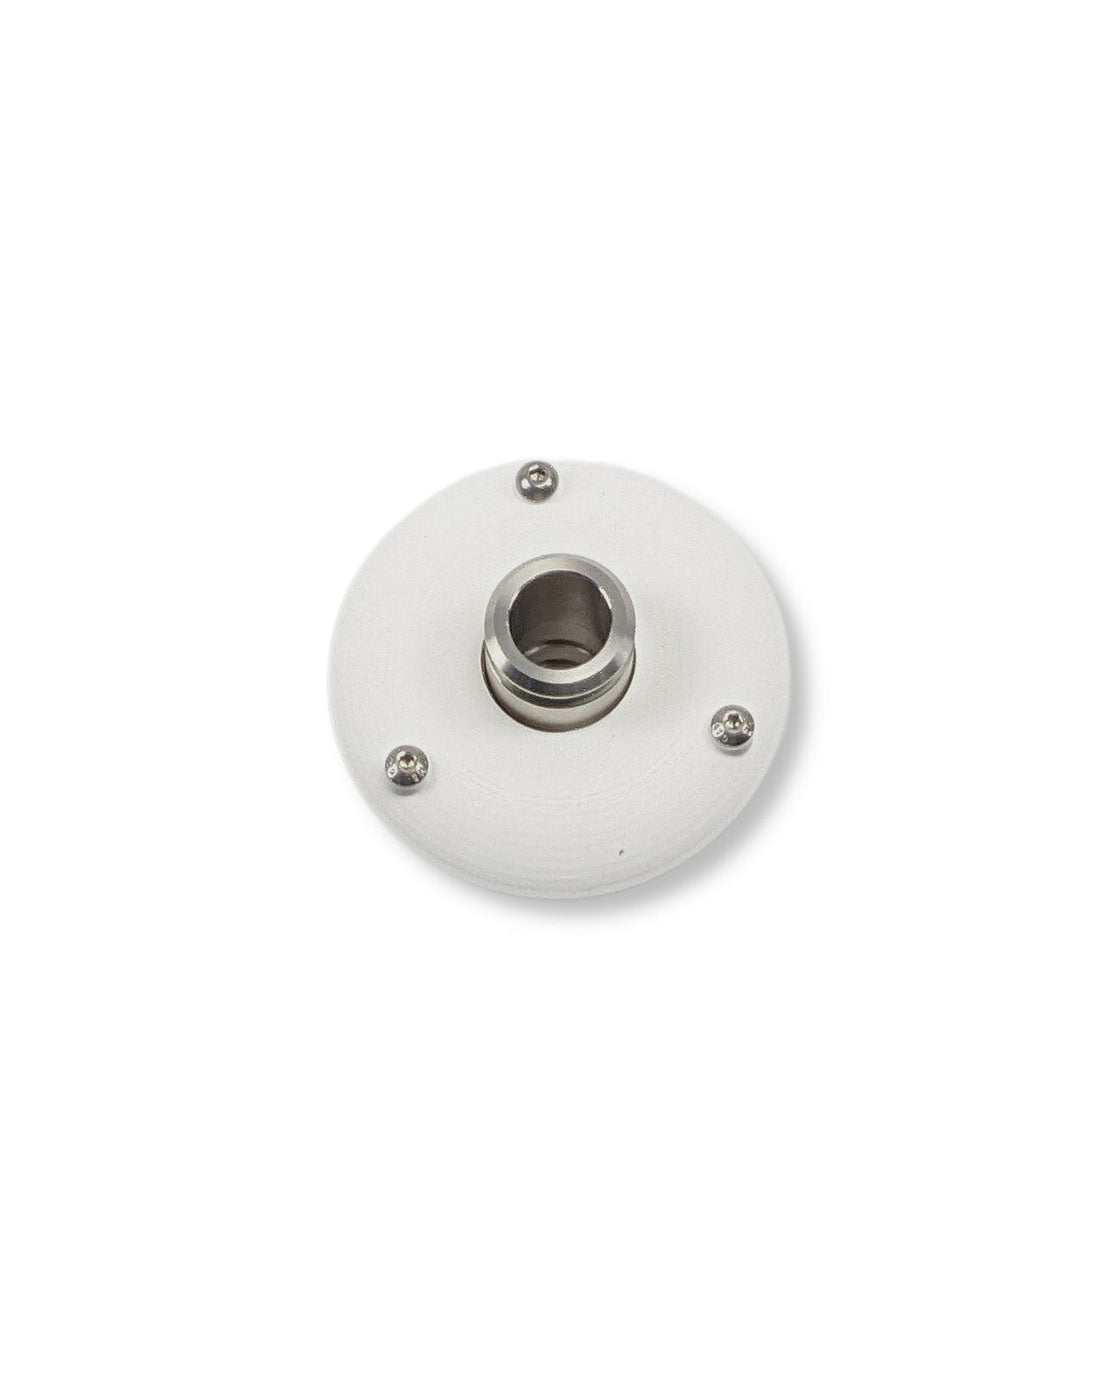 Ein weißer runder Knopf auf einer weißen Oberfläche zur Wasserentnahme, der PURION IBC Universal 17W SPL BS 12V/24V der UV Concept GmbH.